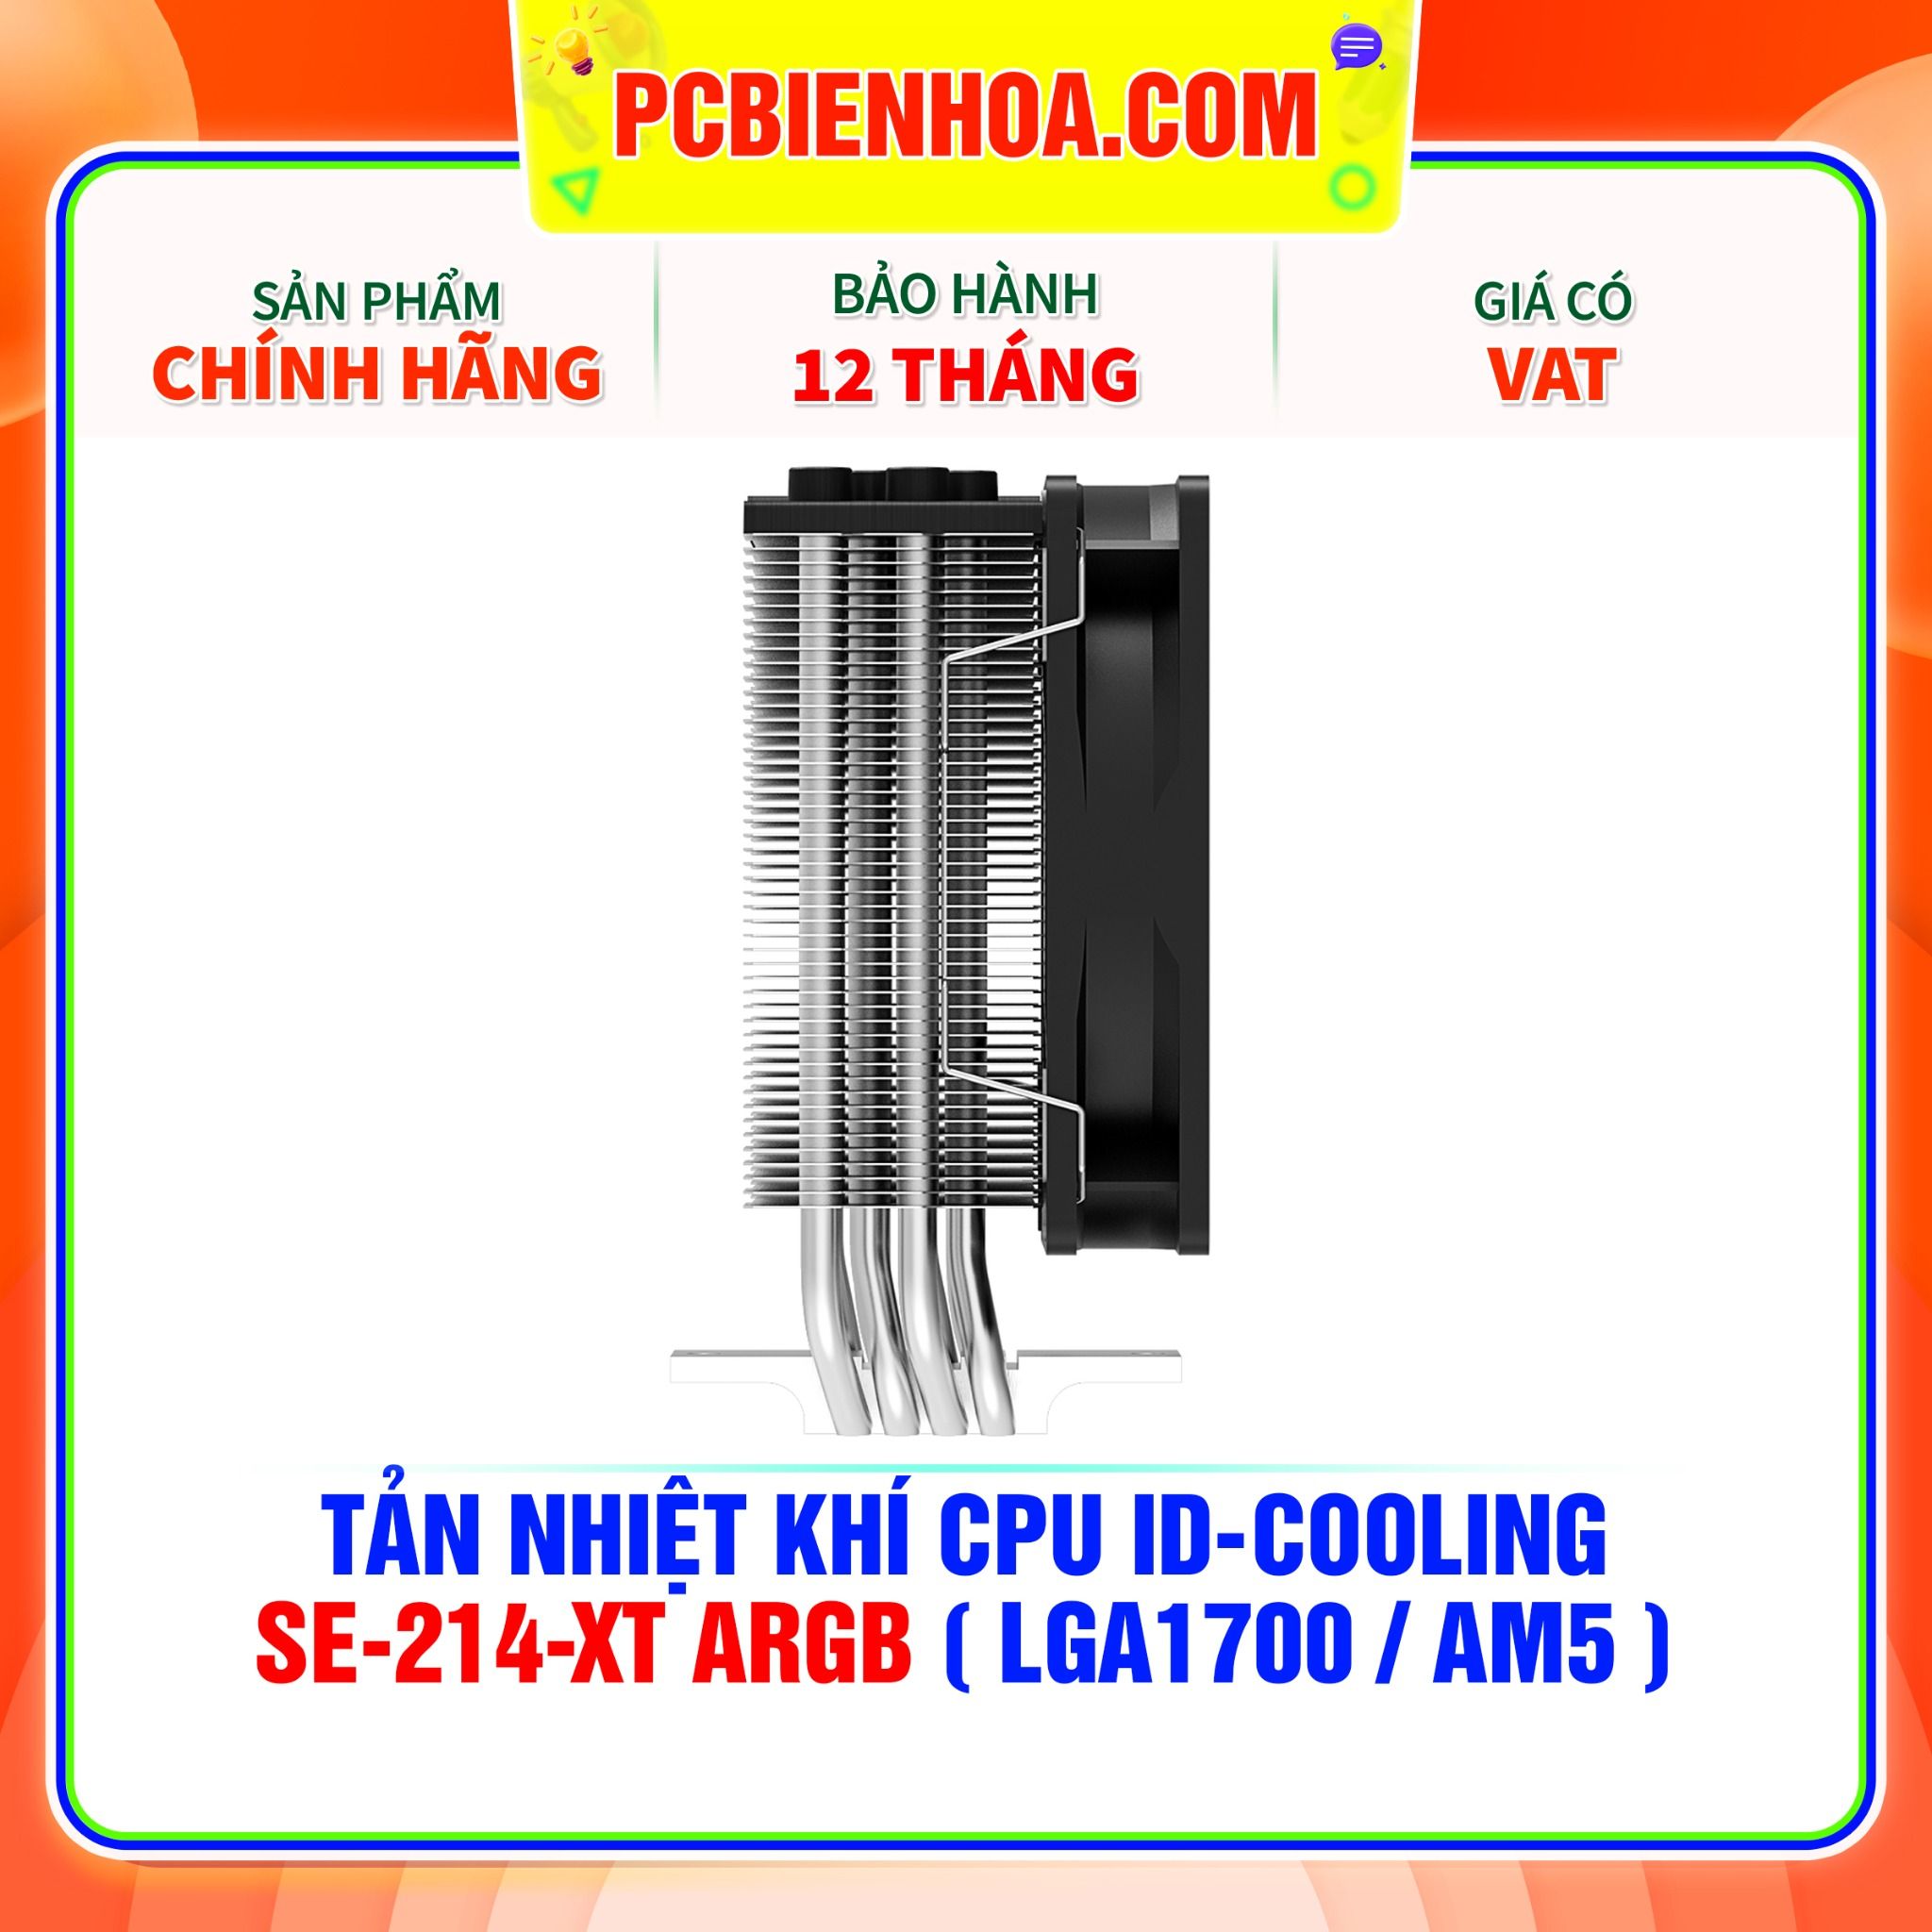  TẢN NHIỆT KHÍ CPU ID-COOLING SE-214-XT ARGB ( HỖ TRỢ SOCKET LGA1700 / AM5 ) 